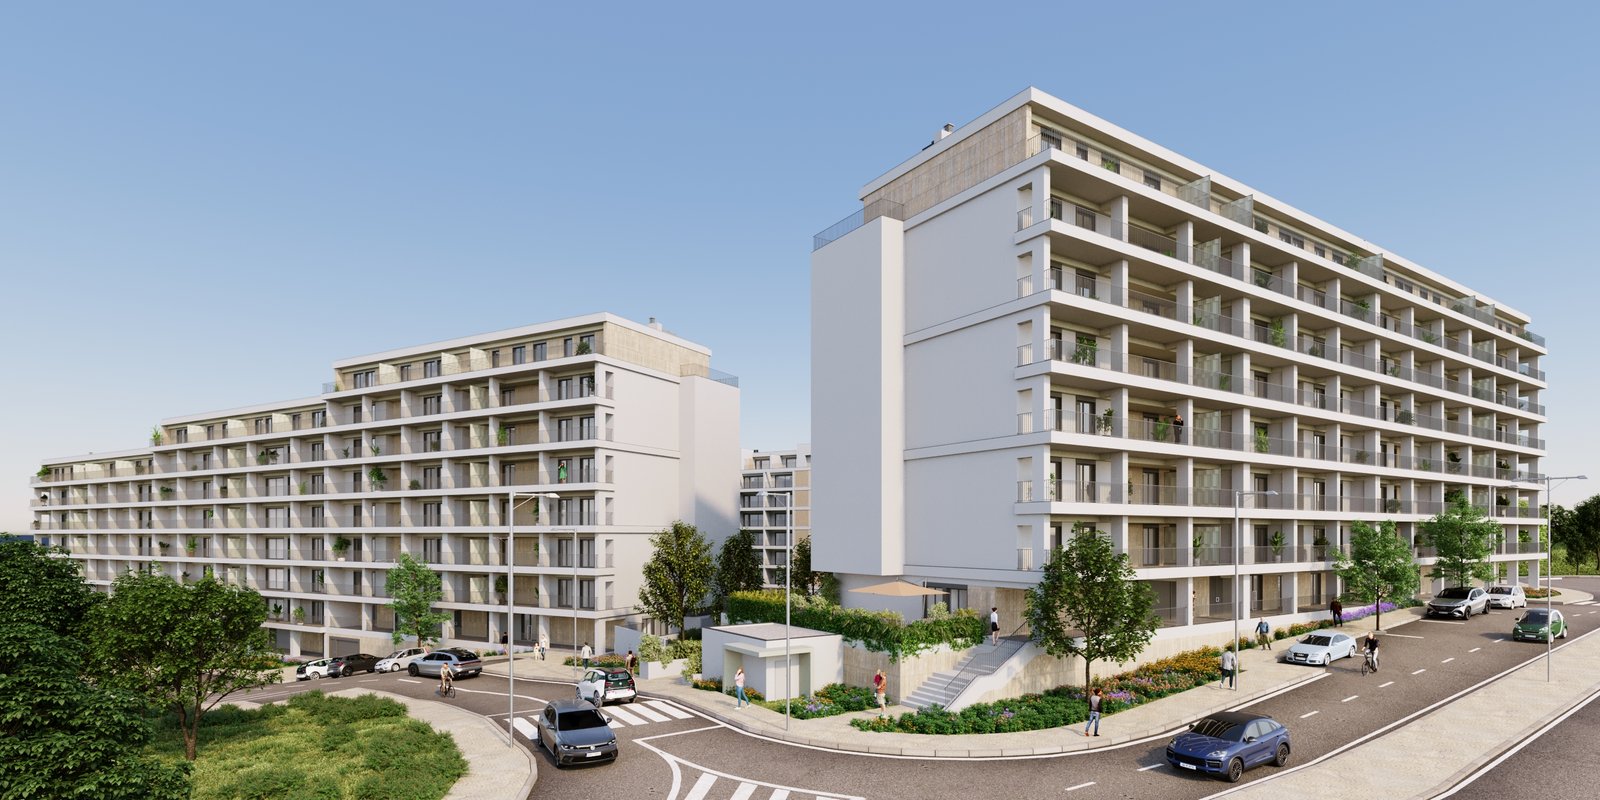 Solyd lança projeto residencial de 75 milhões em Loures